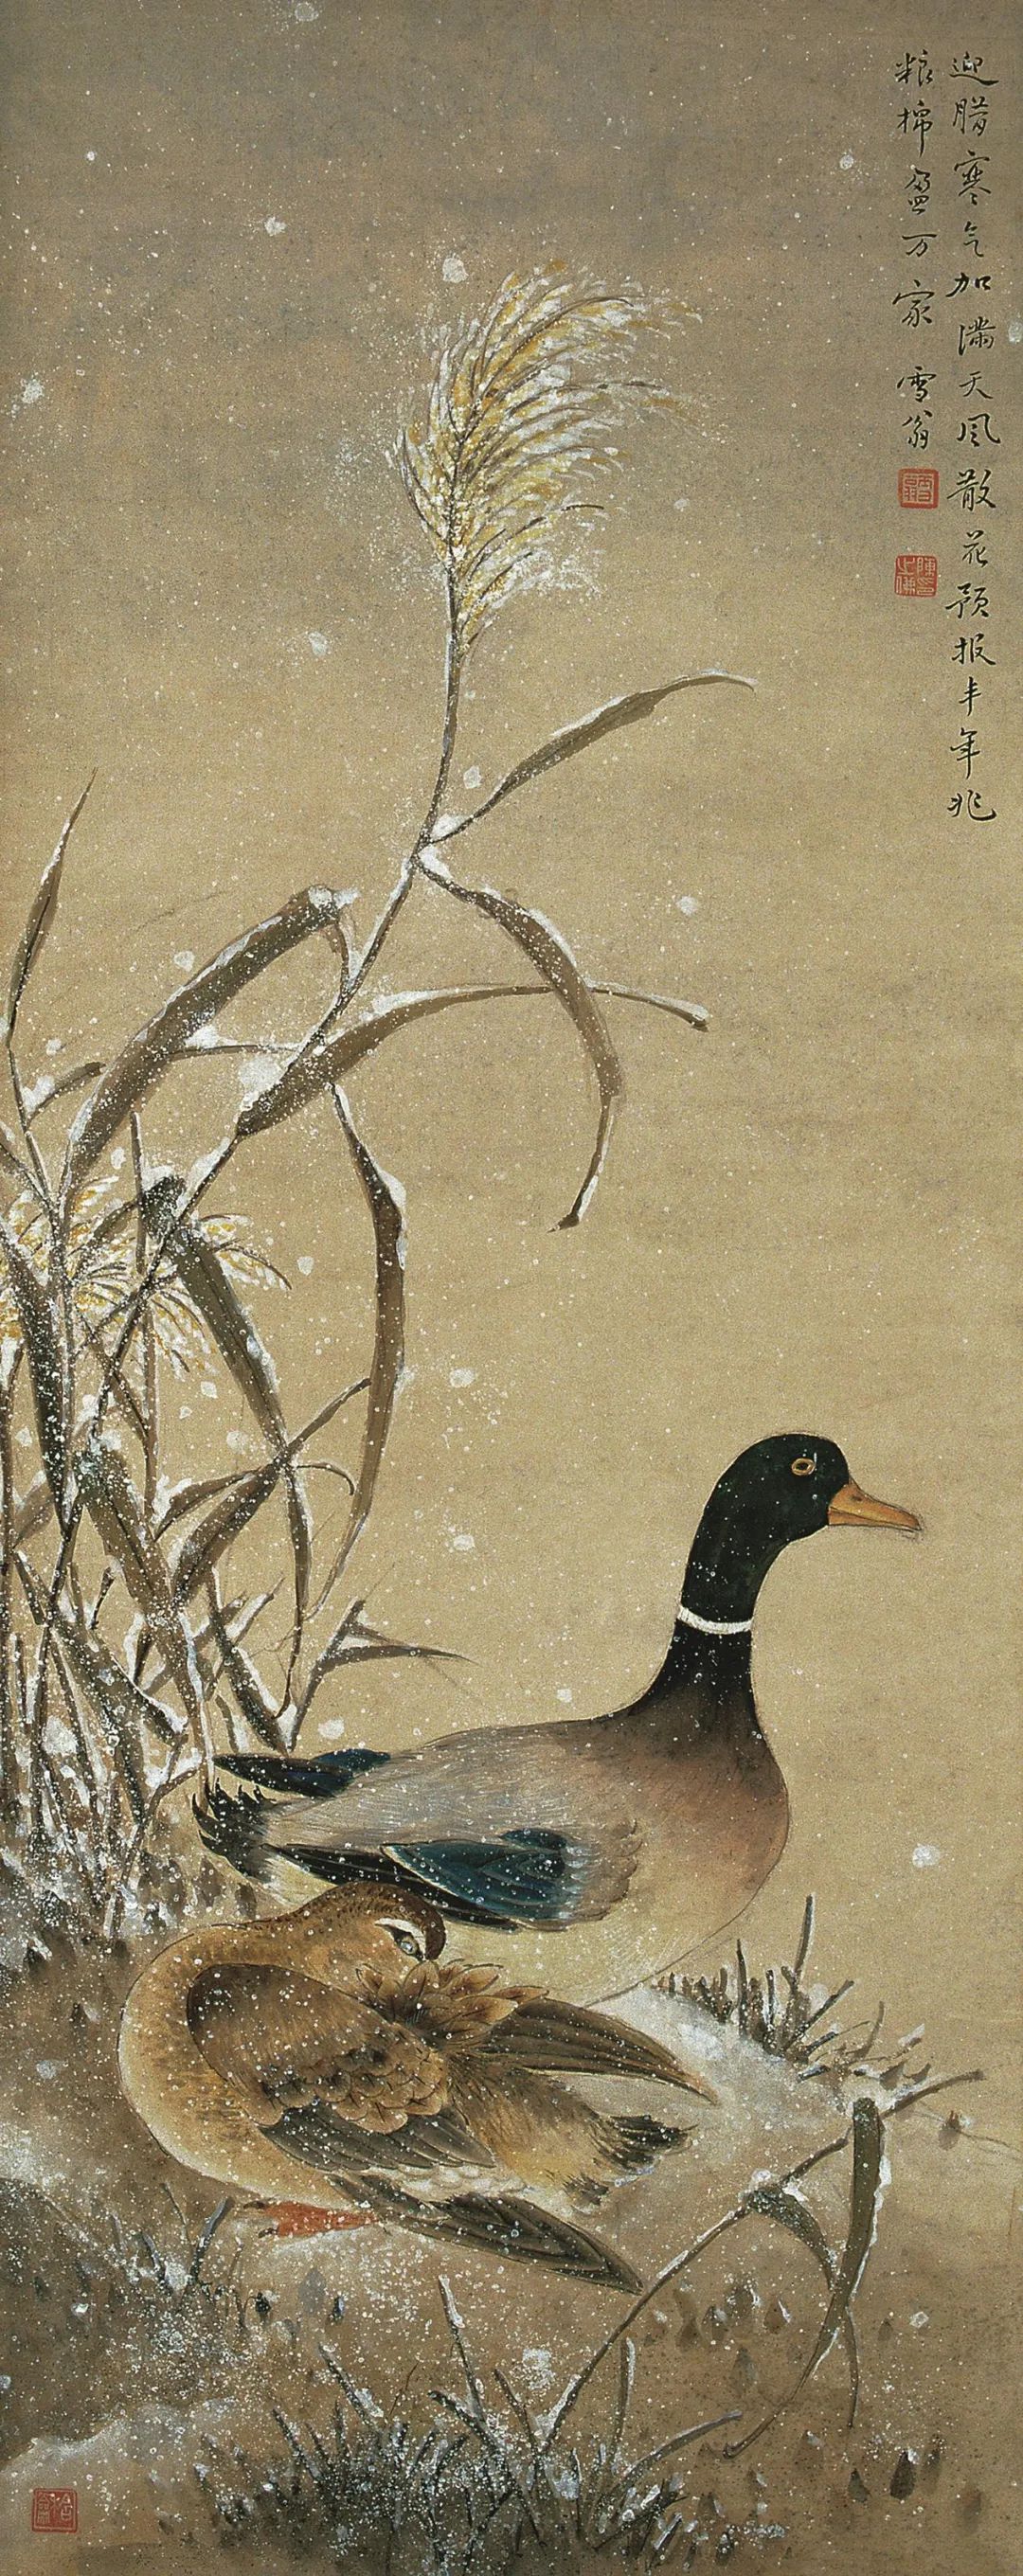 《雪芦双雁》 陈之佛 中国画 100.15×42cm 1960年 南京博物院藏